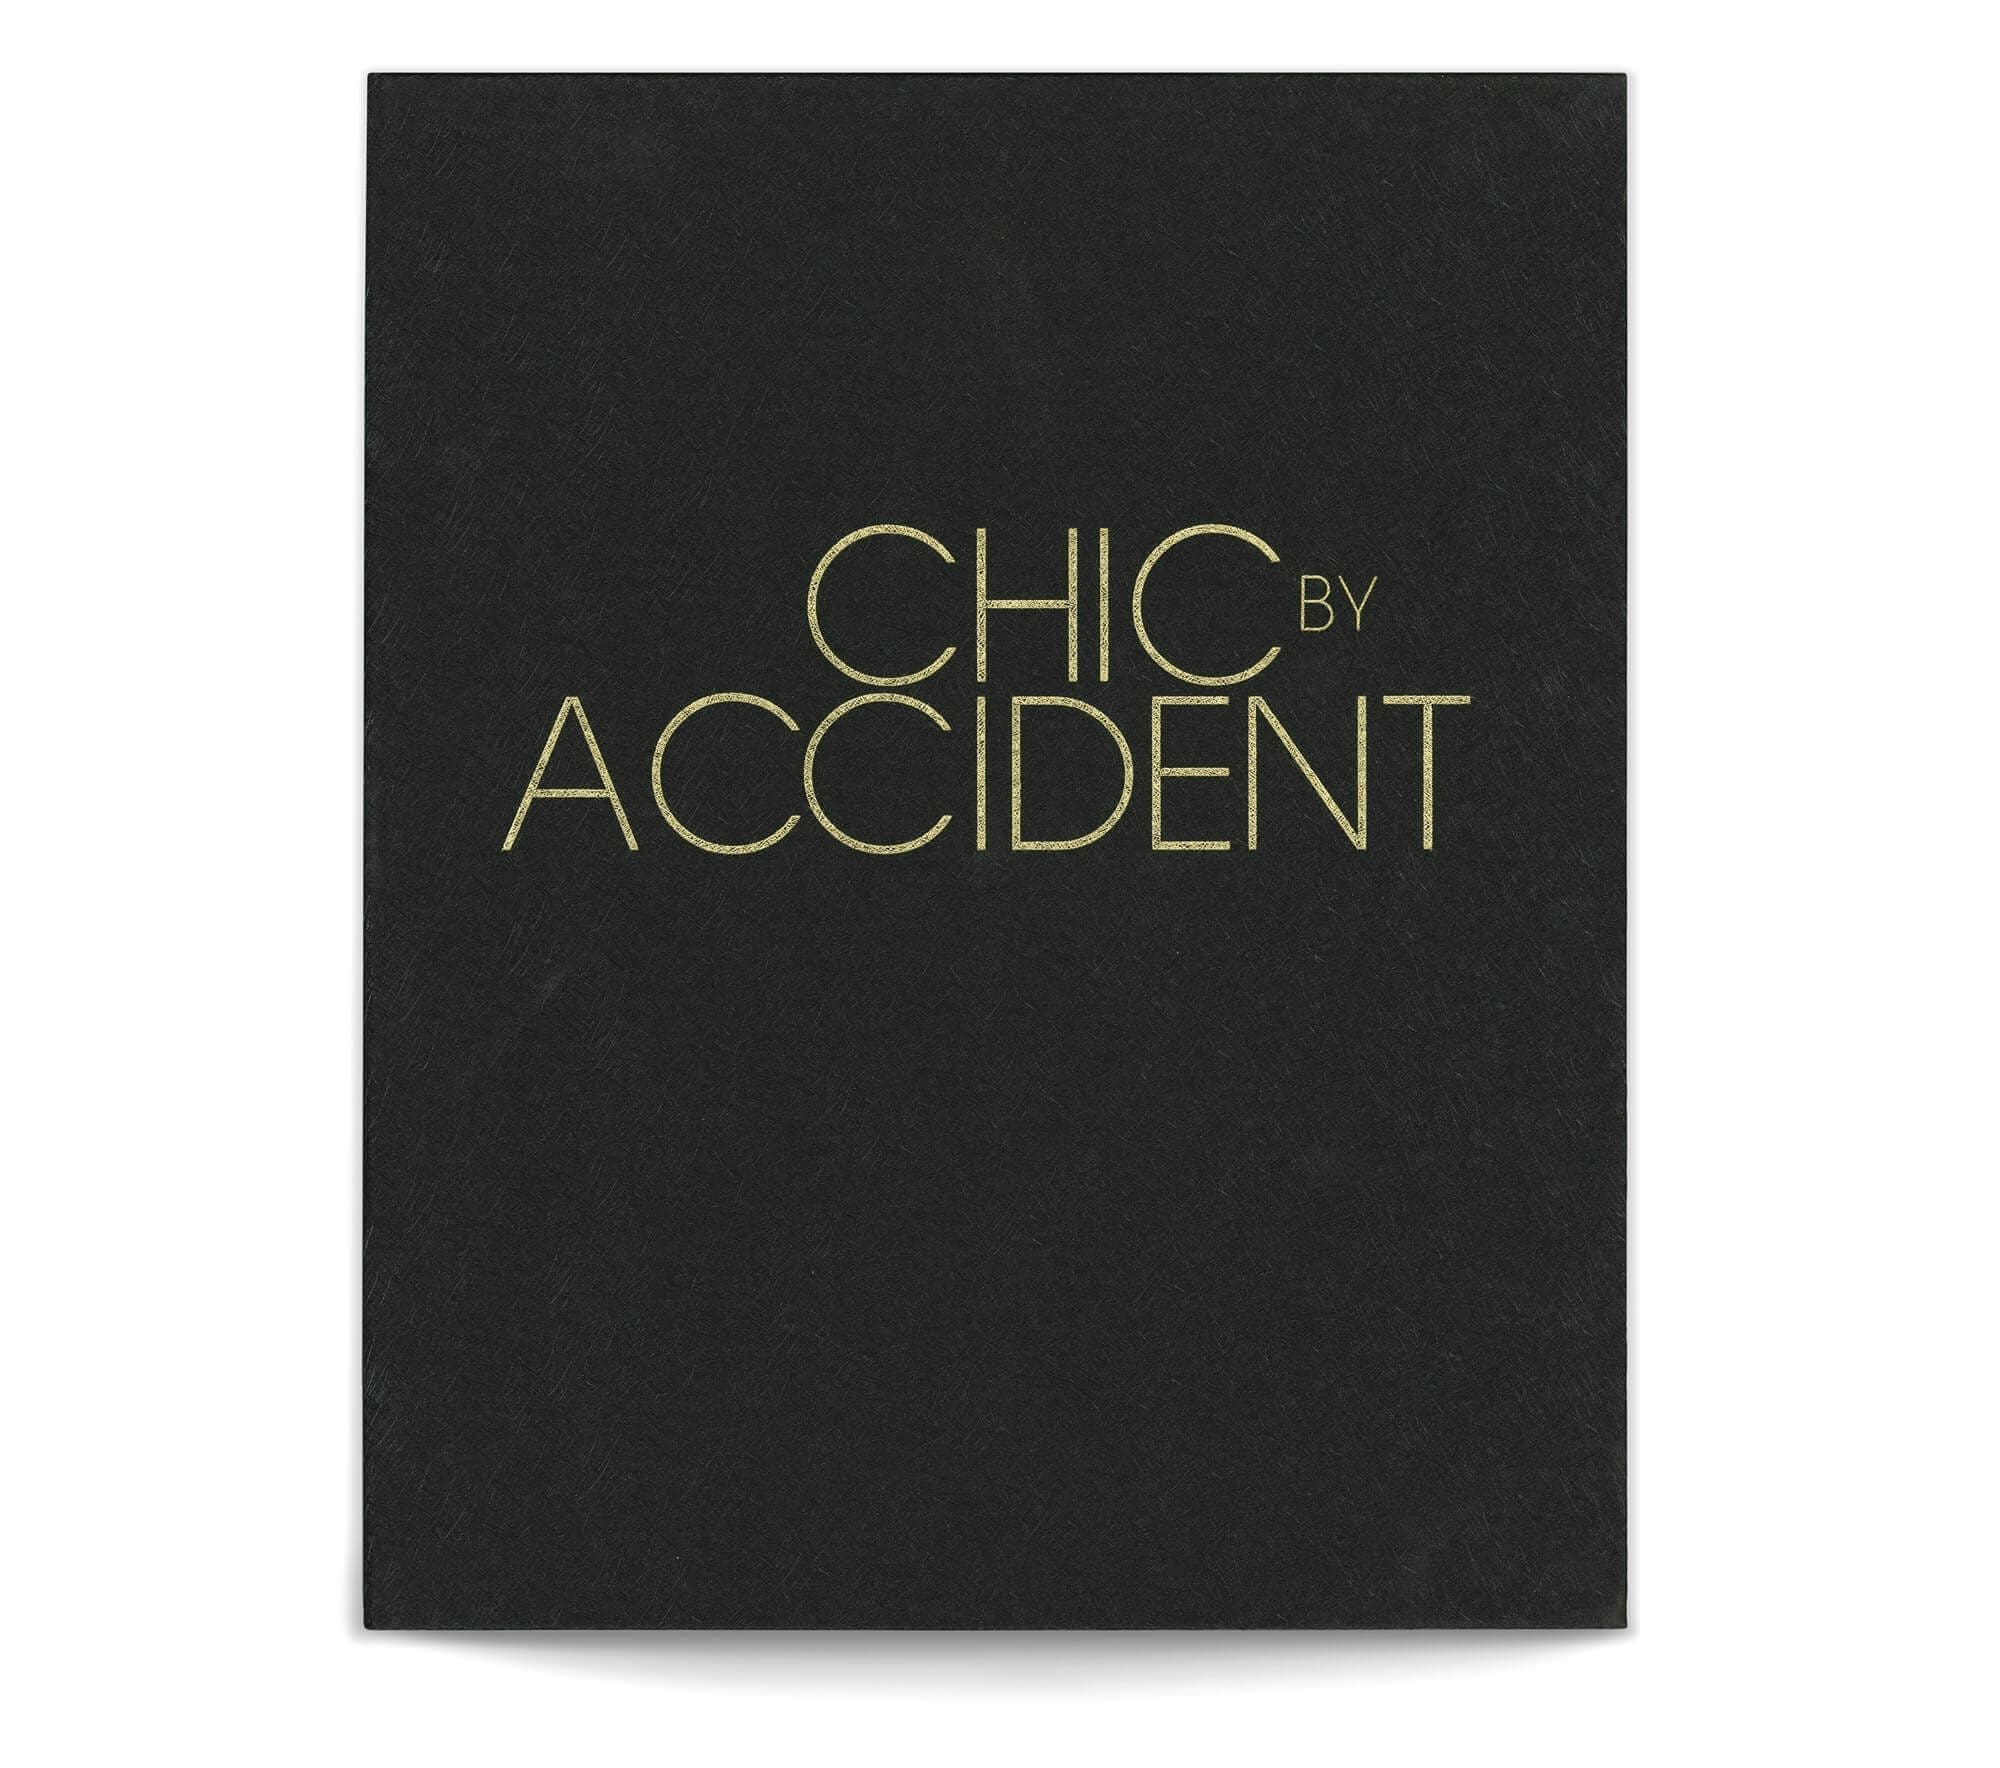 Le livre de Chic by accident se présente dans un coffret au papier texturé avec une dorure a chaud, design IchetKar